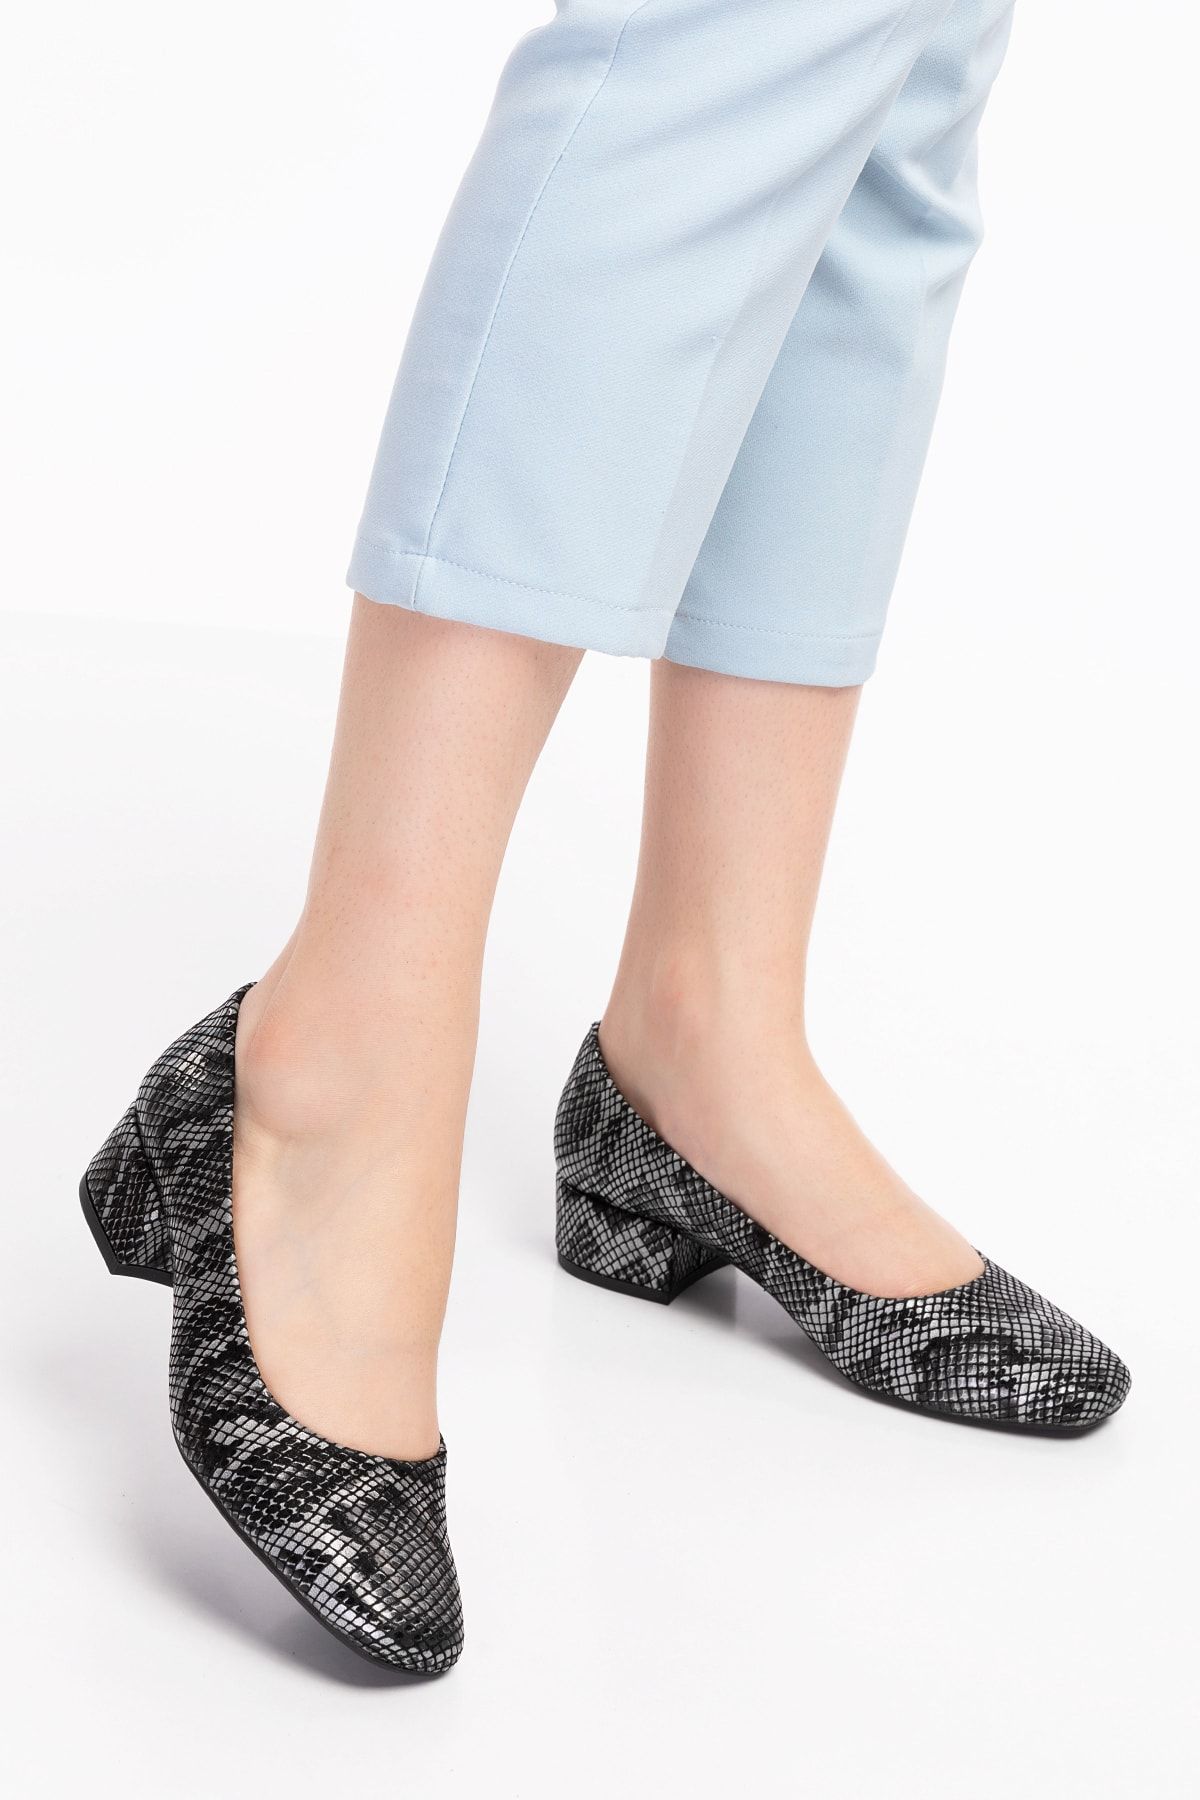 Akgün Terlik Kadın Siyah Hakiki Deri Yılan Şık Topuklu Ayakkabı